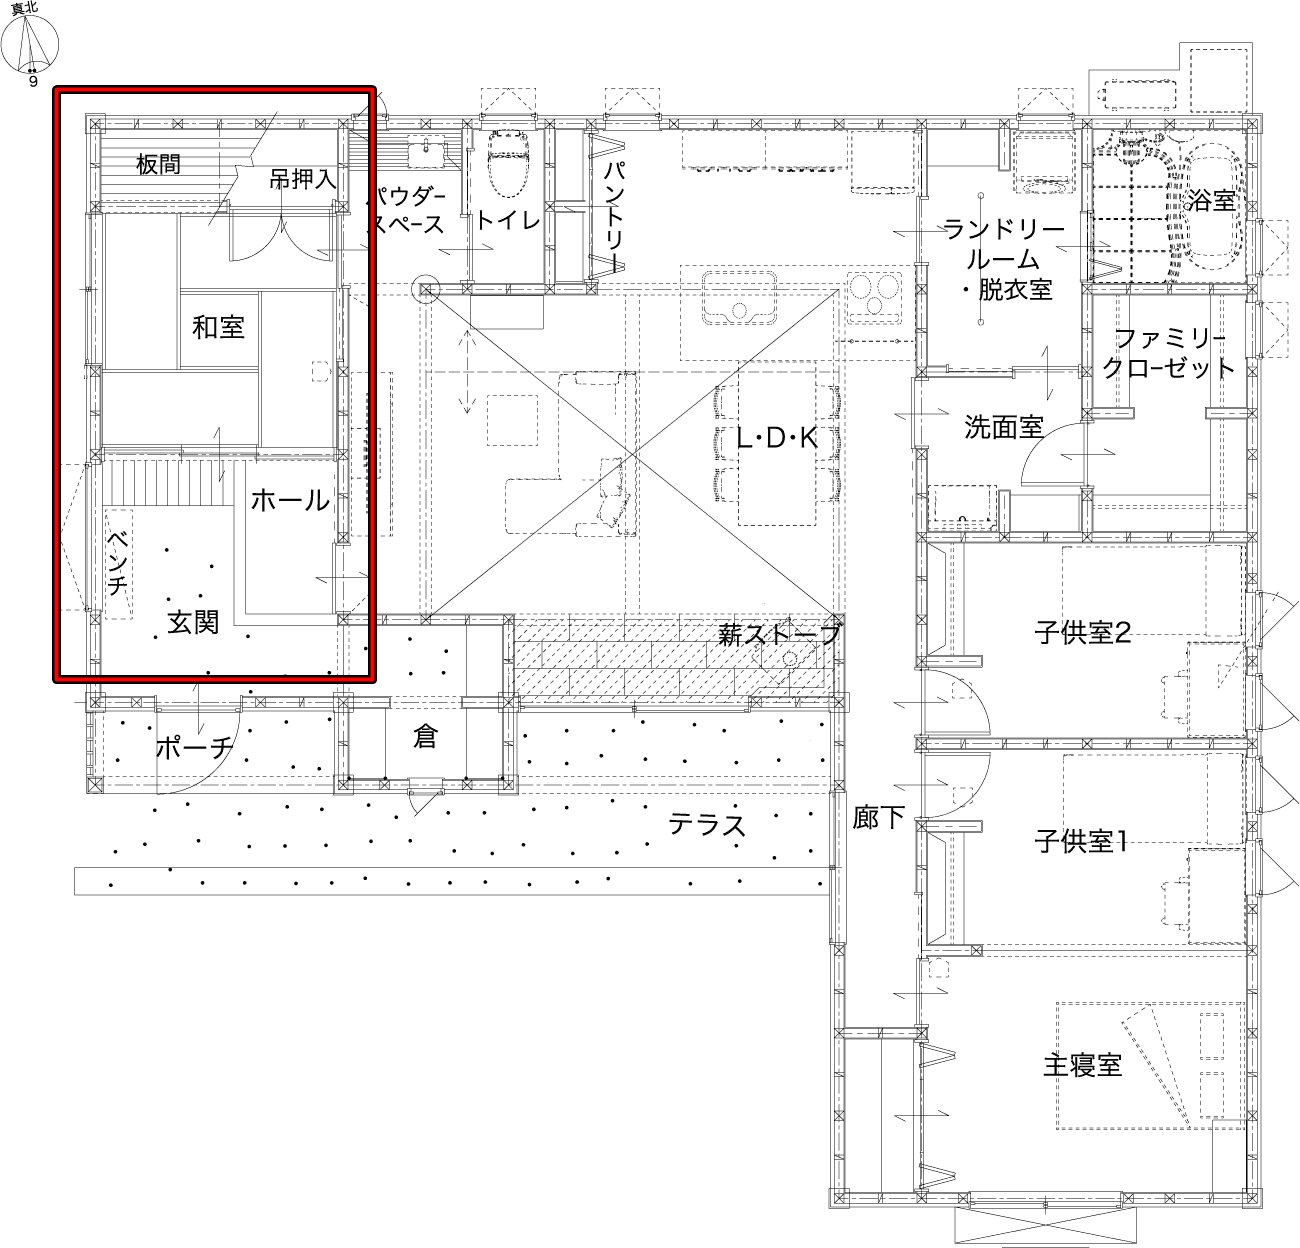 丸和建設さんの平屋「川内天辰モデルハウス」の玄関正面にひろがる和の空間の間取り図